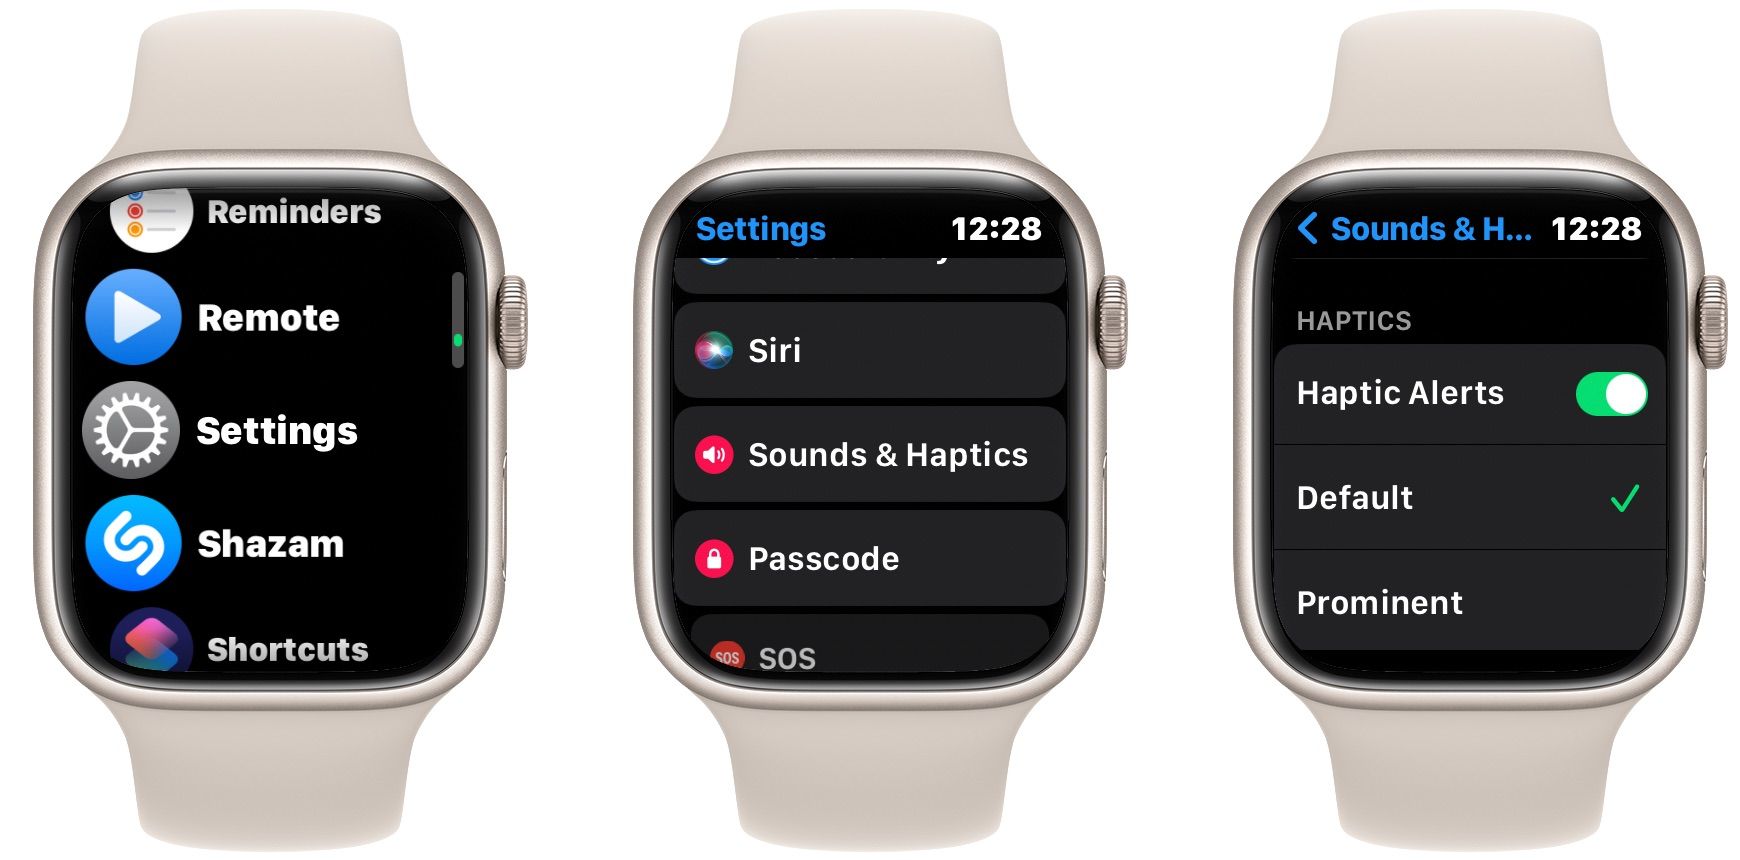 Configurações de som e sensação do Apple Watch